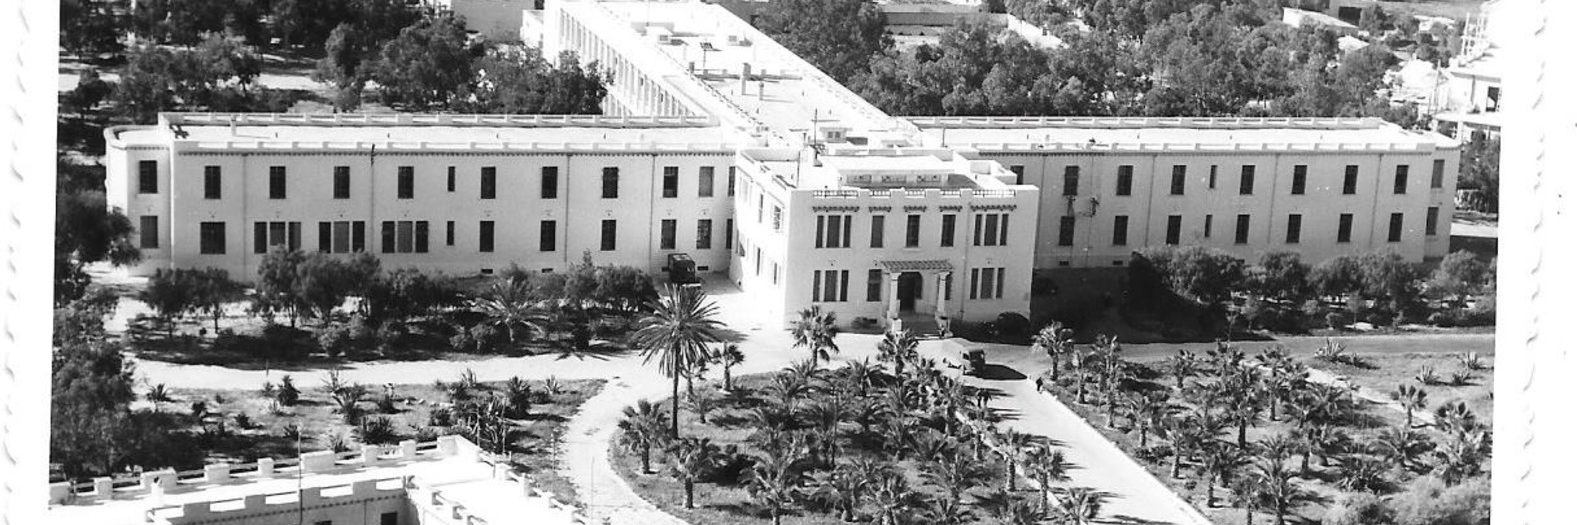 L’hôpital régional de Sfax (actuellement hôpital Hedi Chaker)